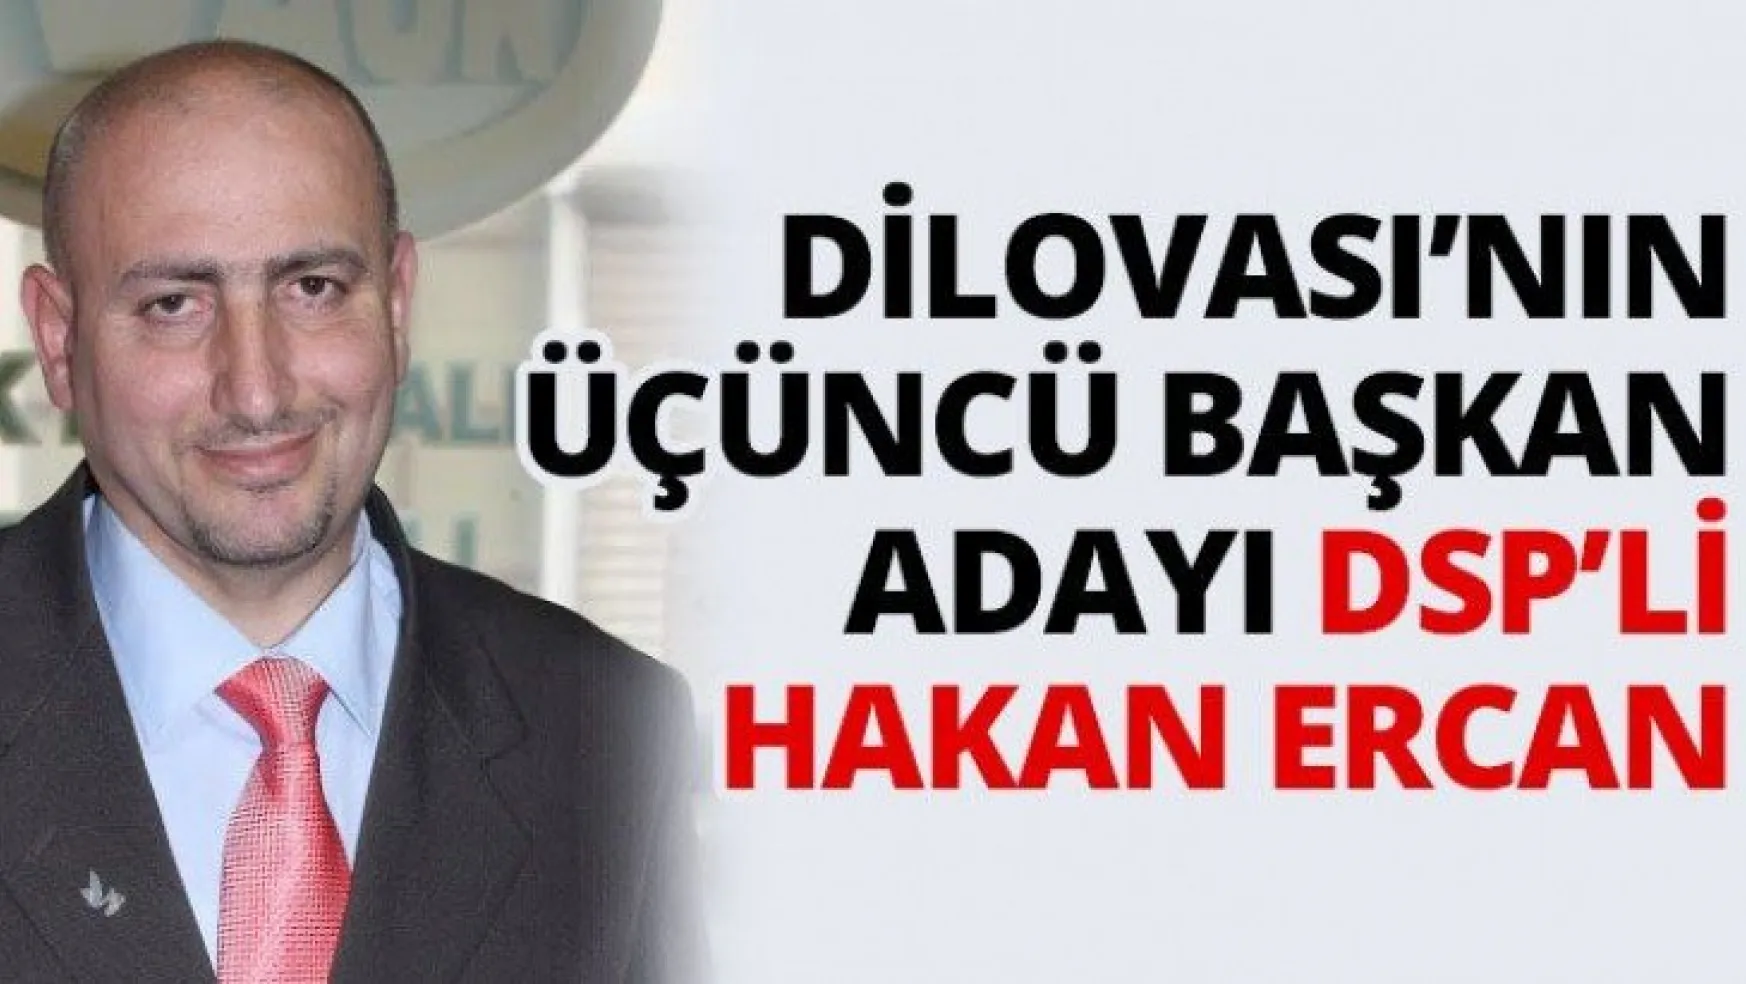 Dilovası'nın üçüncü başkan adayı DSP'li Hakan Ercan